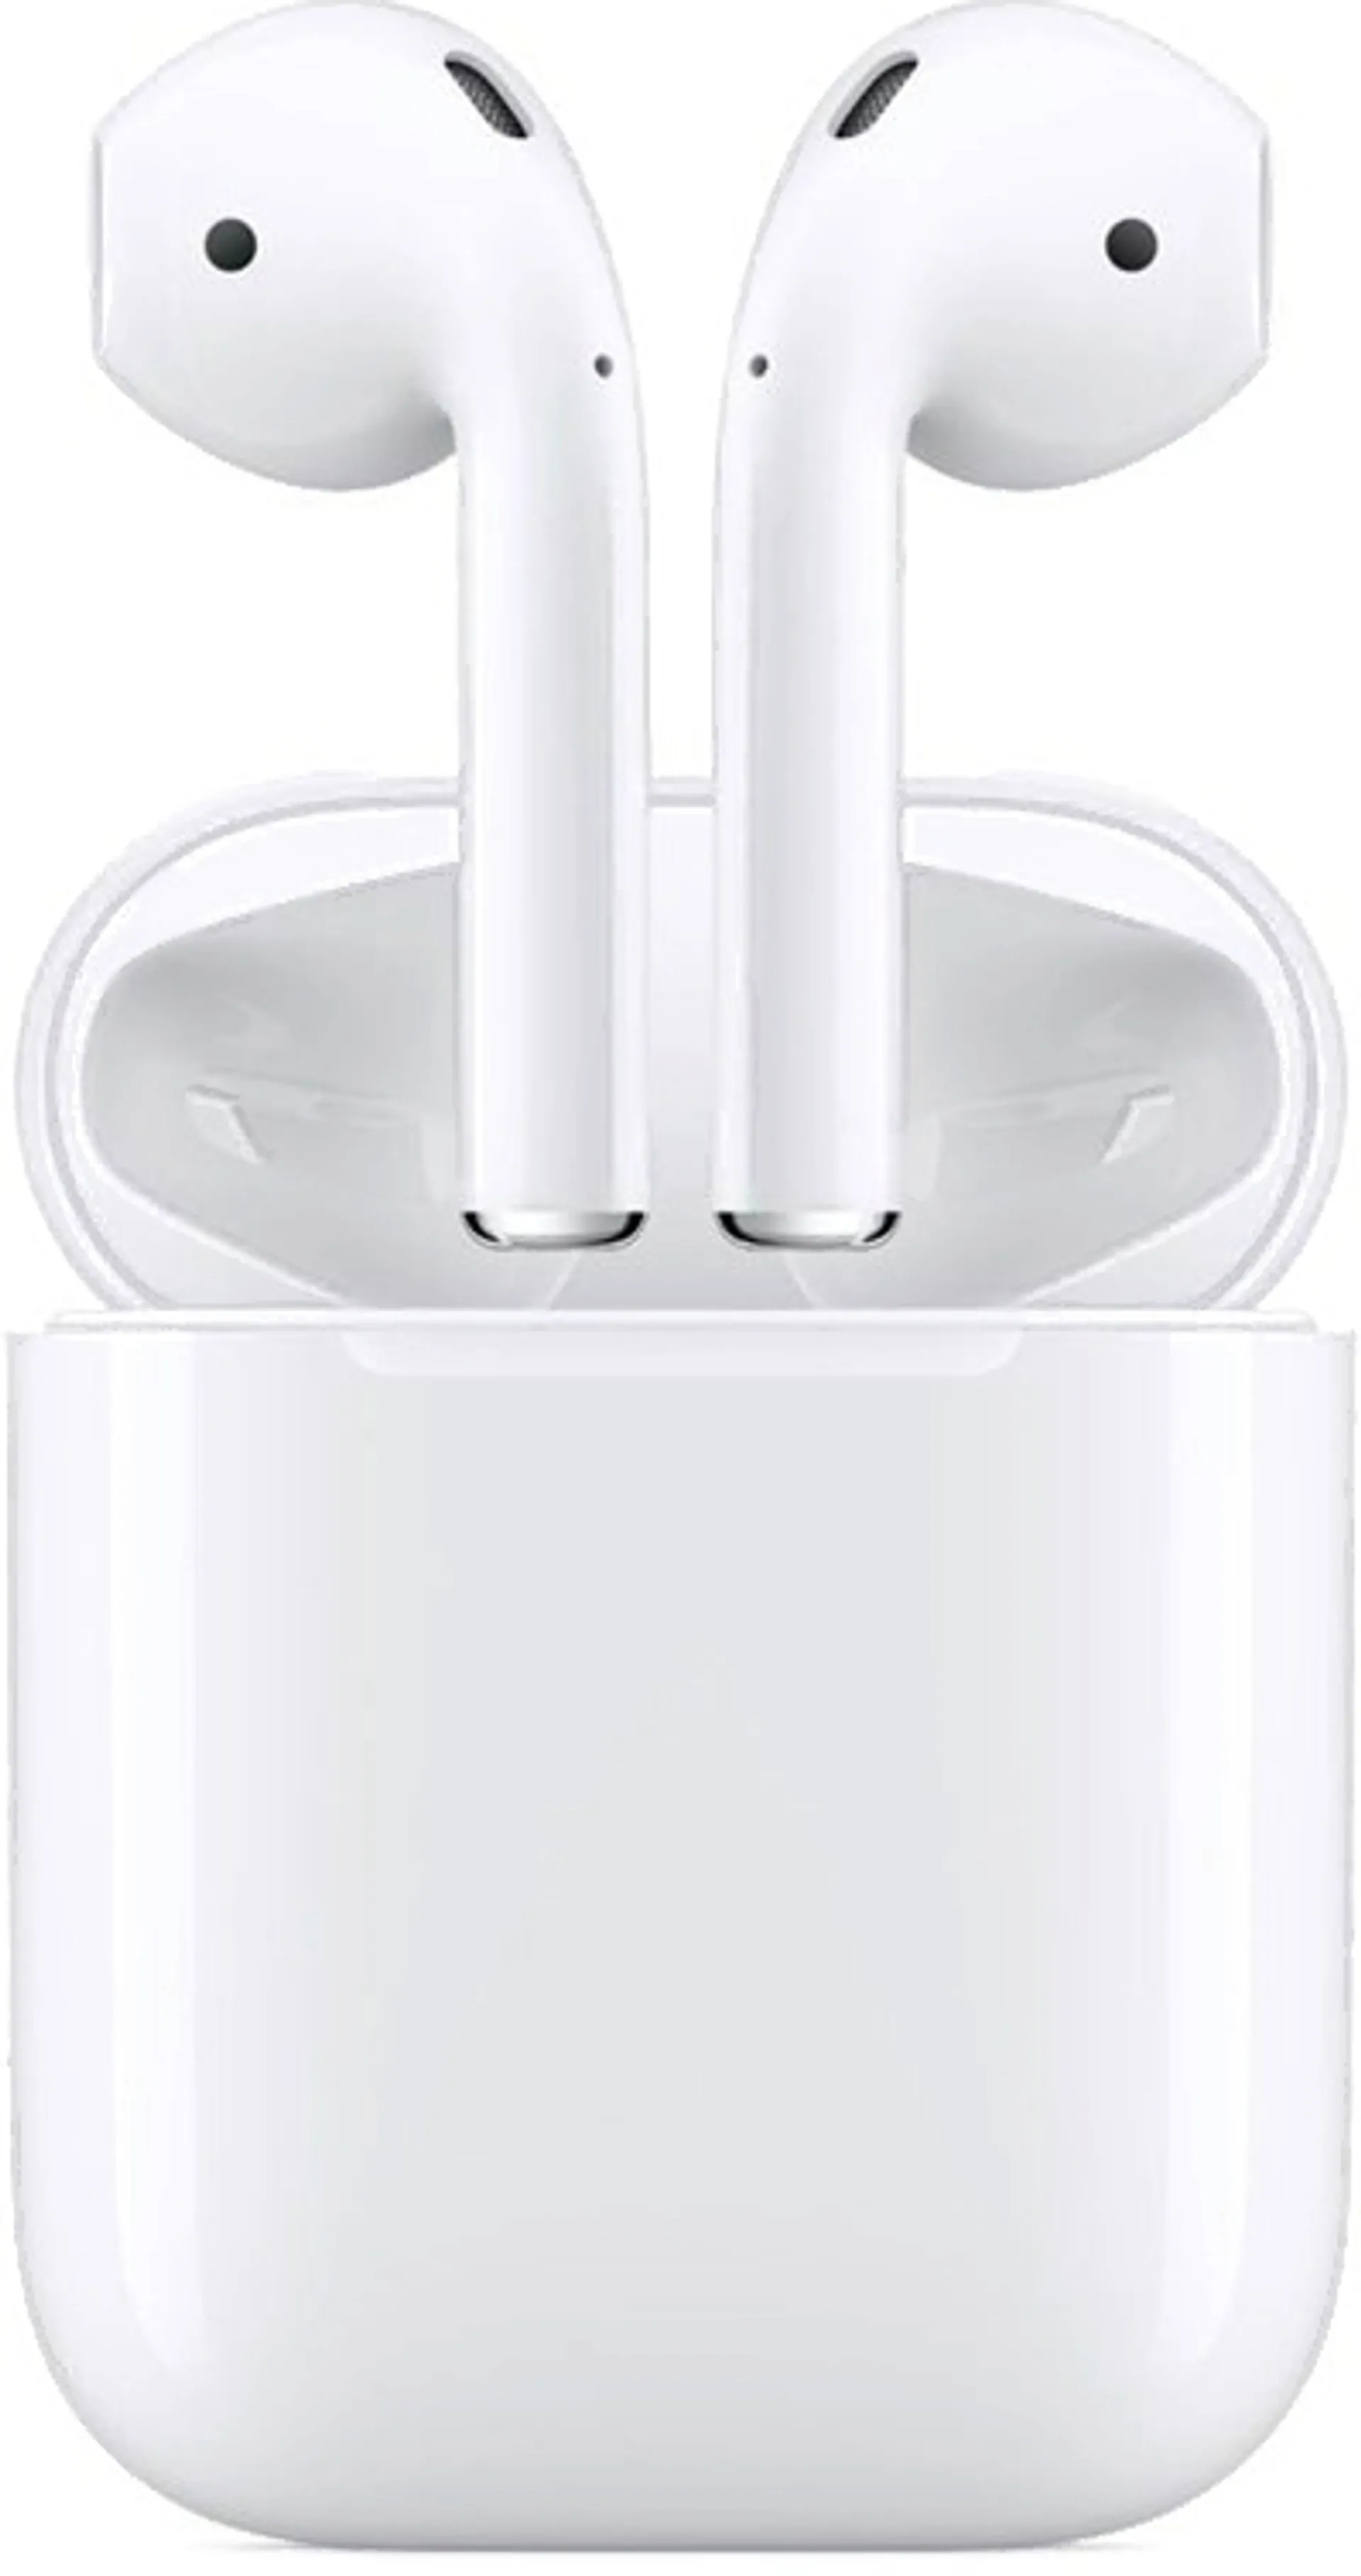 Apple AirPods langattomat kuulokkeet valkoinen (2. sukupolvi) - 4